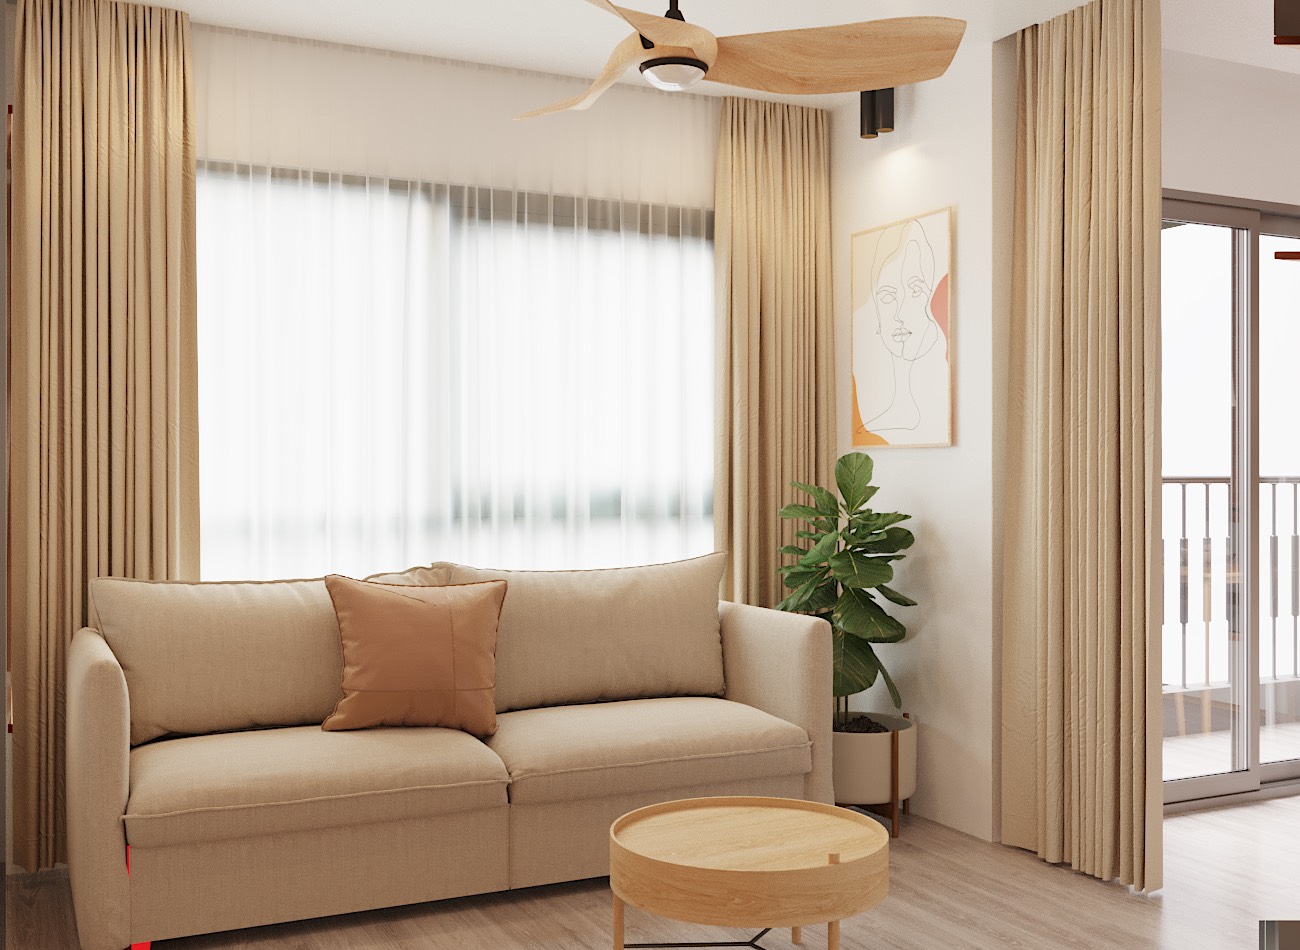 Phòng khách căn hộ 60m2 được đóng khung bởi ghế sofa màu be sáng, bàn trà gỗ và tranh nghệ thuật treo tường. Rèm cửa hai lớp giúp điều tiết tinh tế ánh sáng tự nhiên vào phòng.